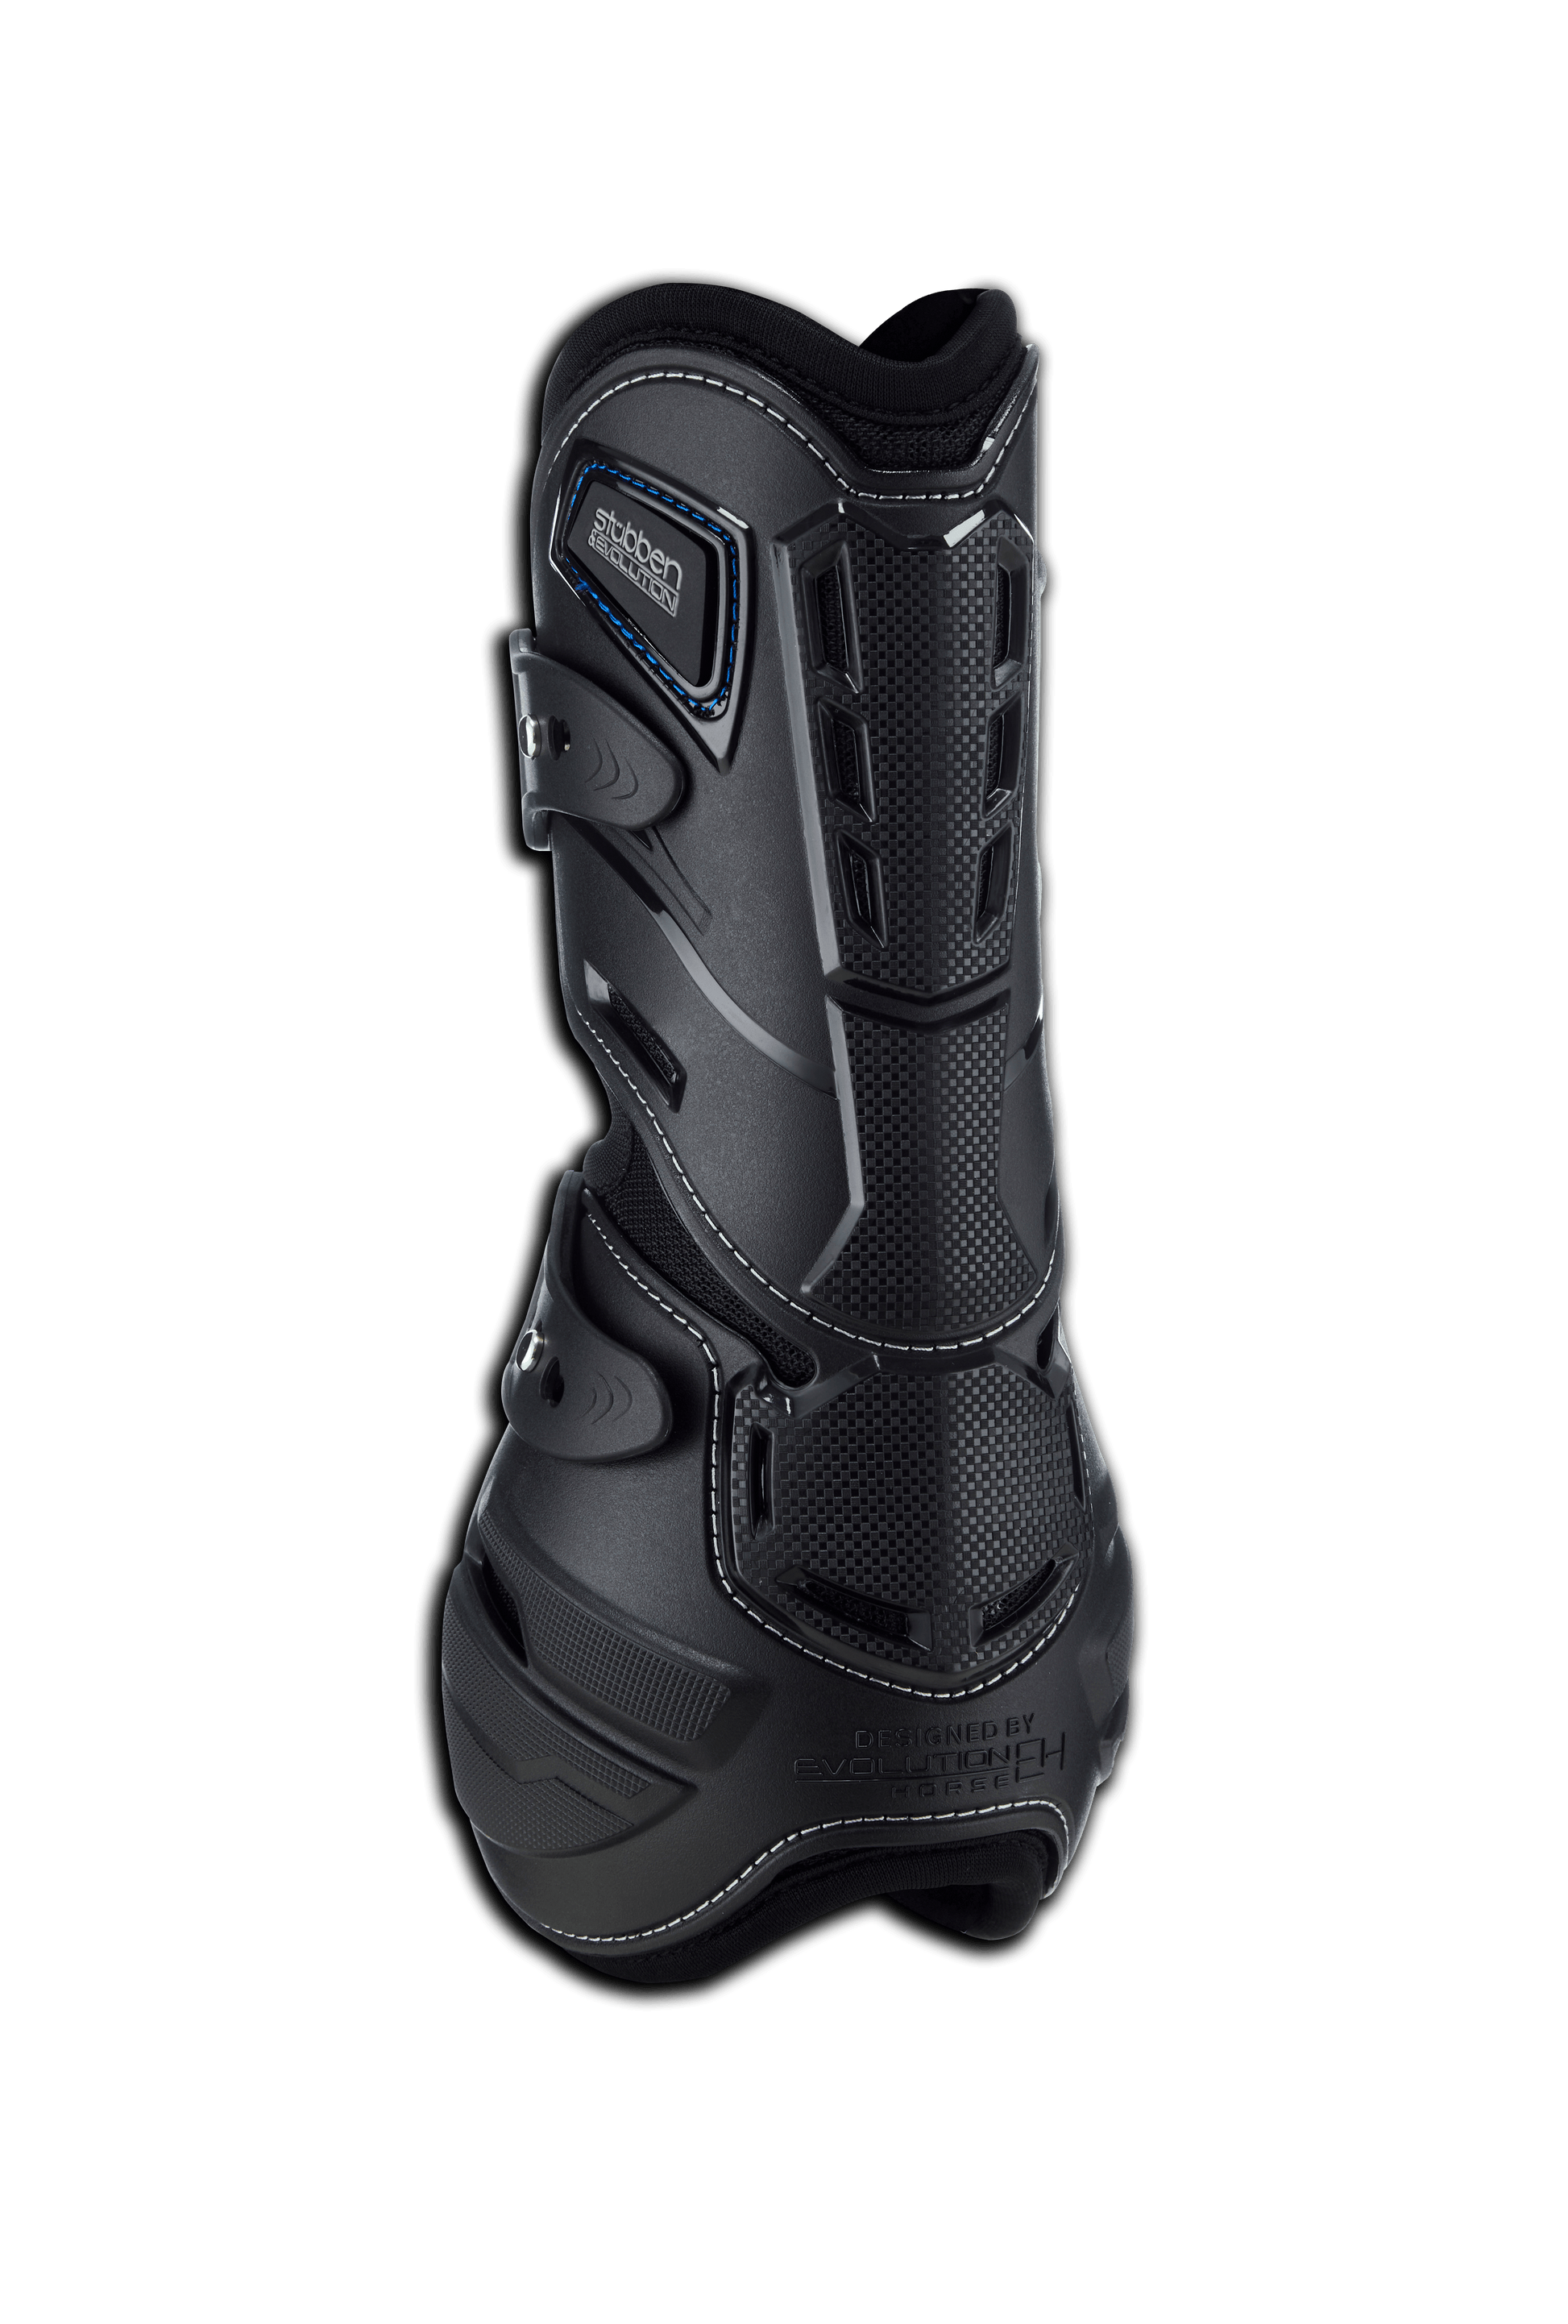 Stübben hybrid tendon boots - HorseworldEU